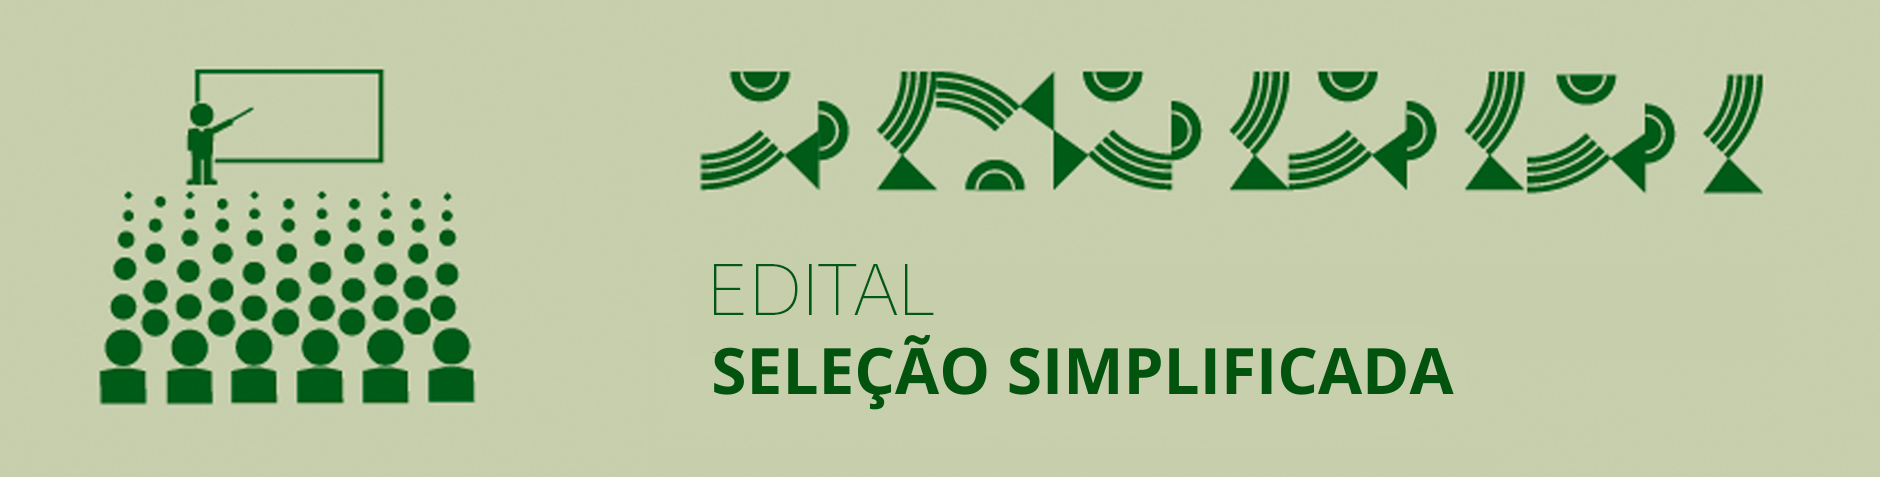 EDITAL DE SELEÇÃO SIMPLIFICADA